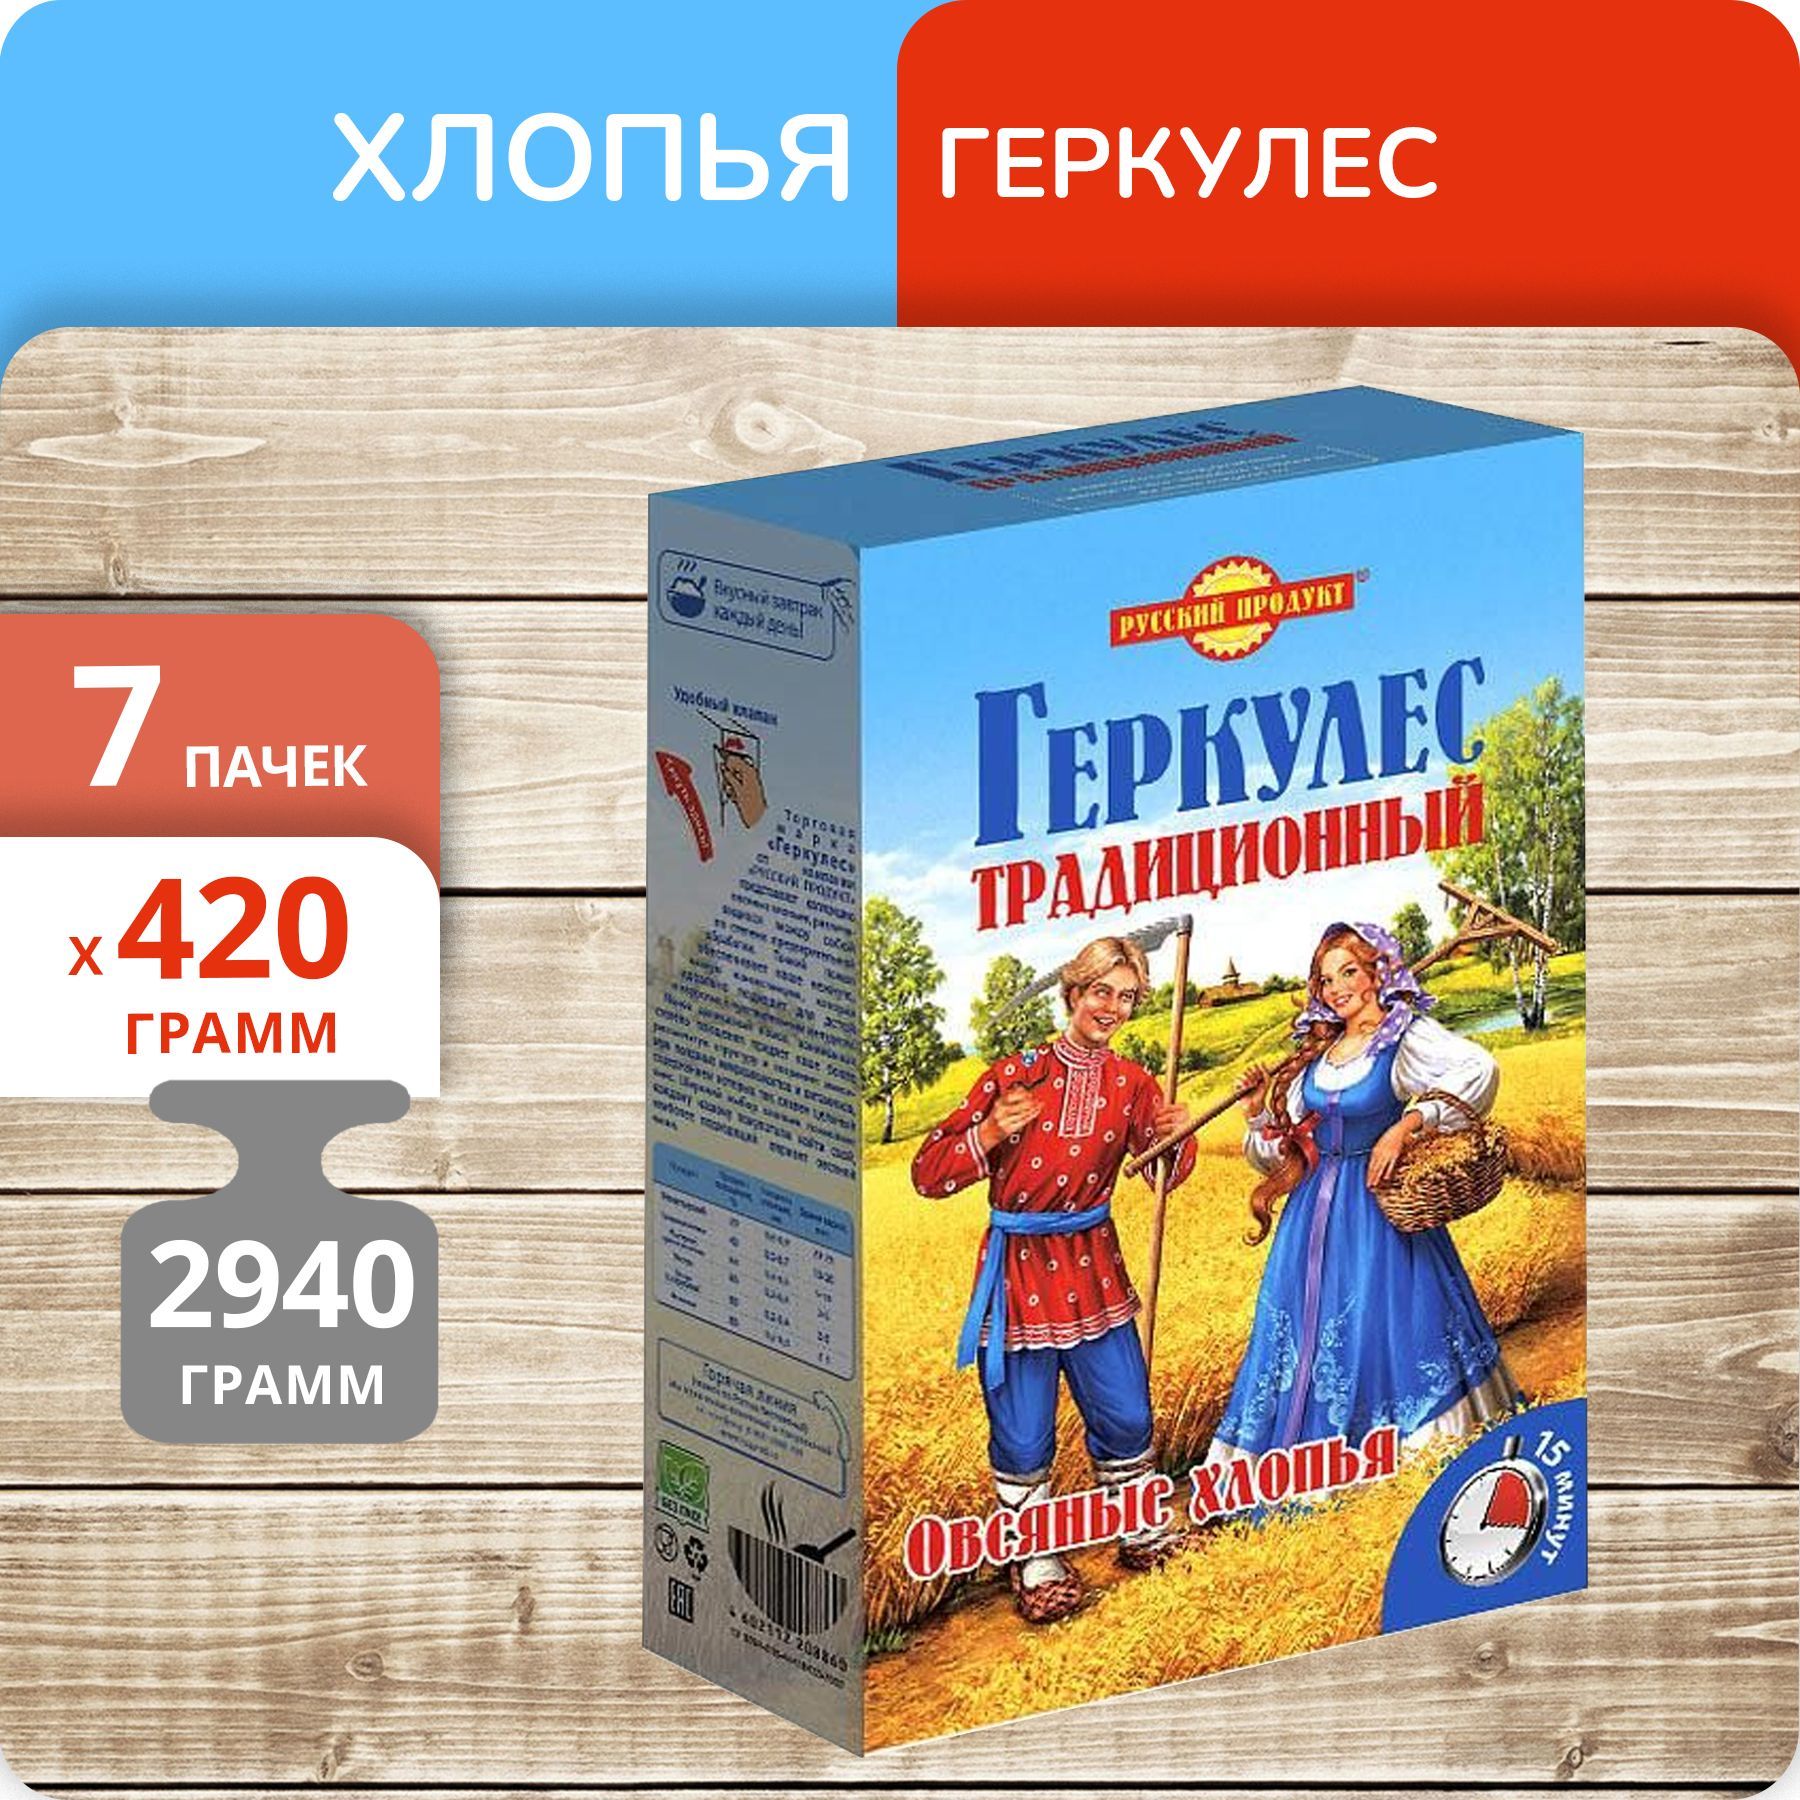 Геркулес Русский продукт традиционный, 420 г х 7 пачек